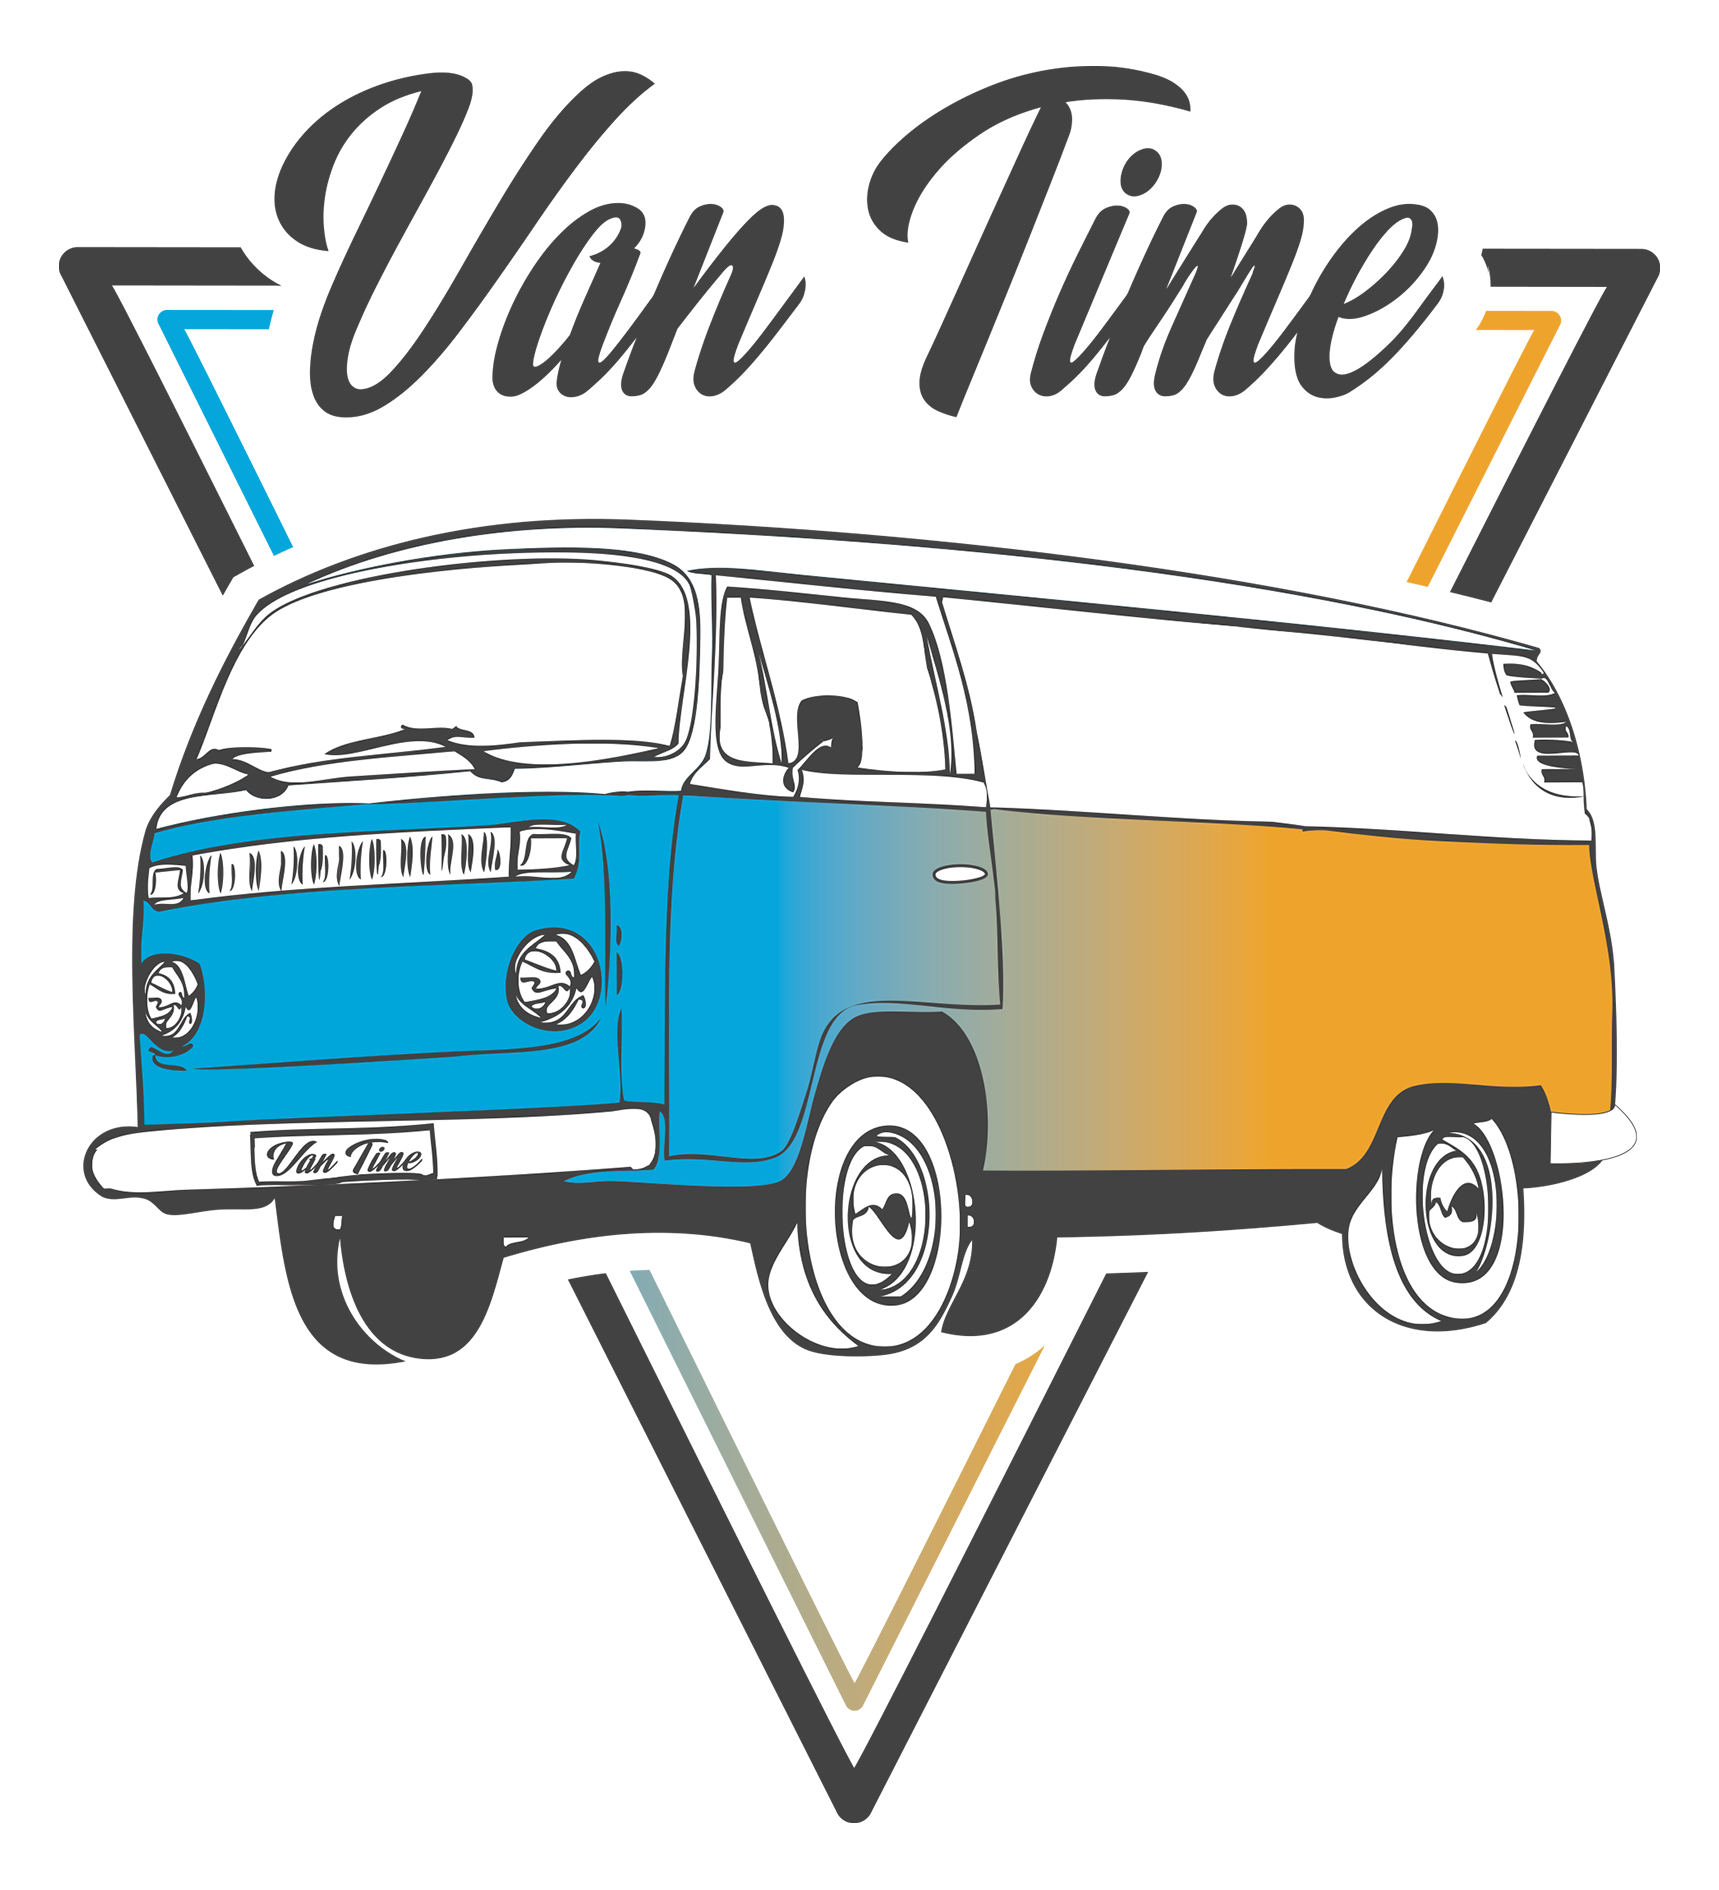 Van Time